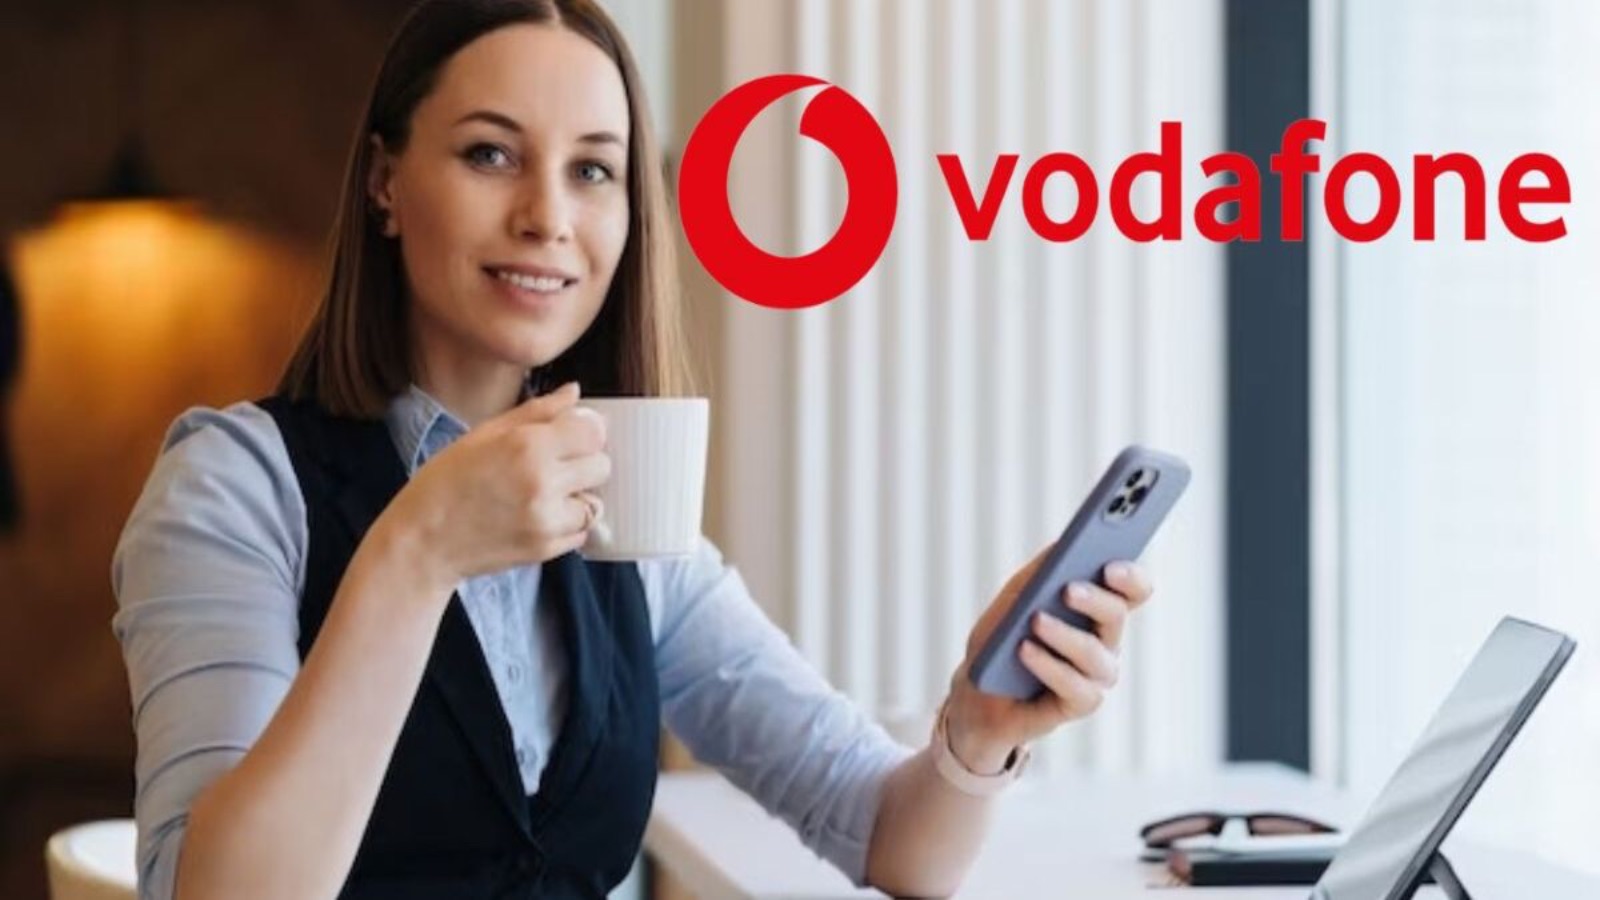 Vodafone vs TIM, le offerte a confronto arrivano a 150 GB con dei REGALI